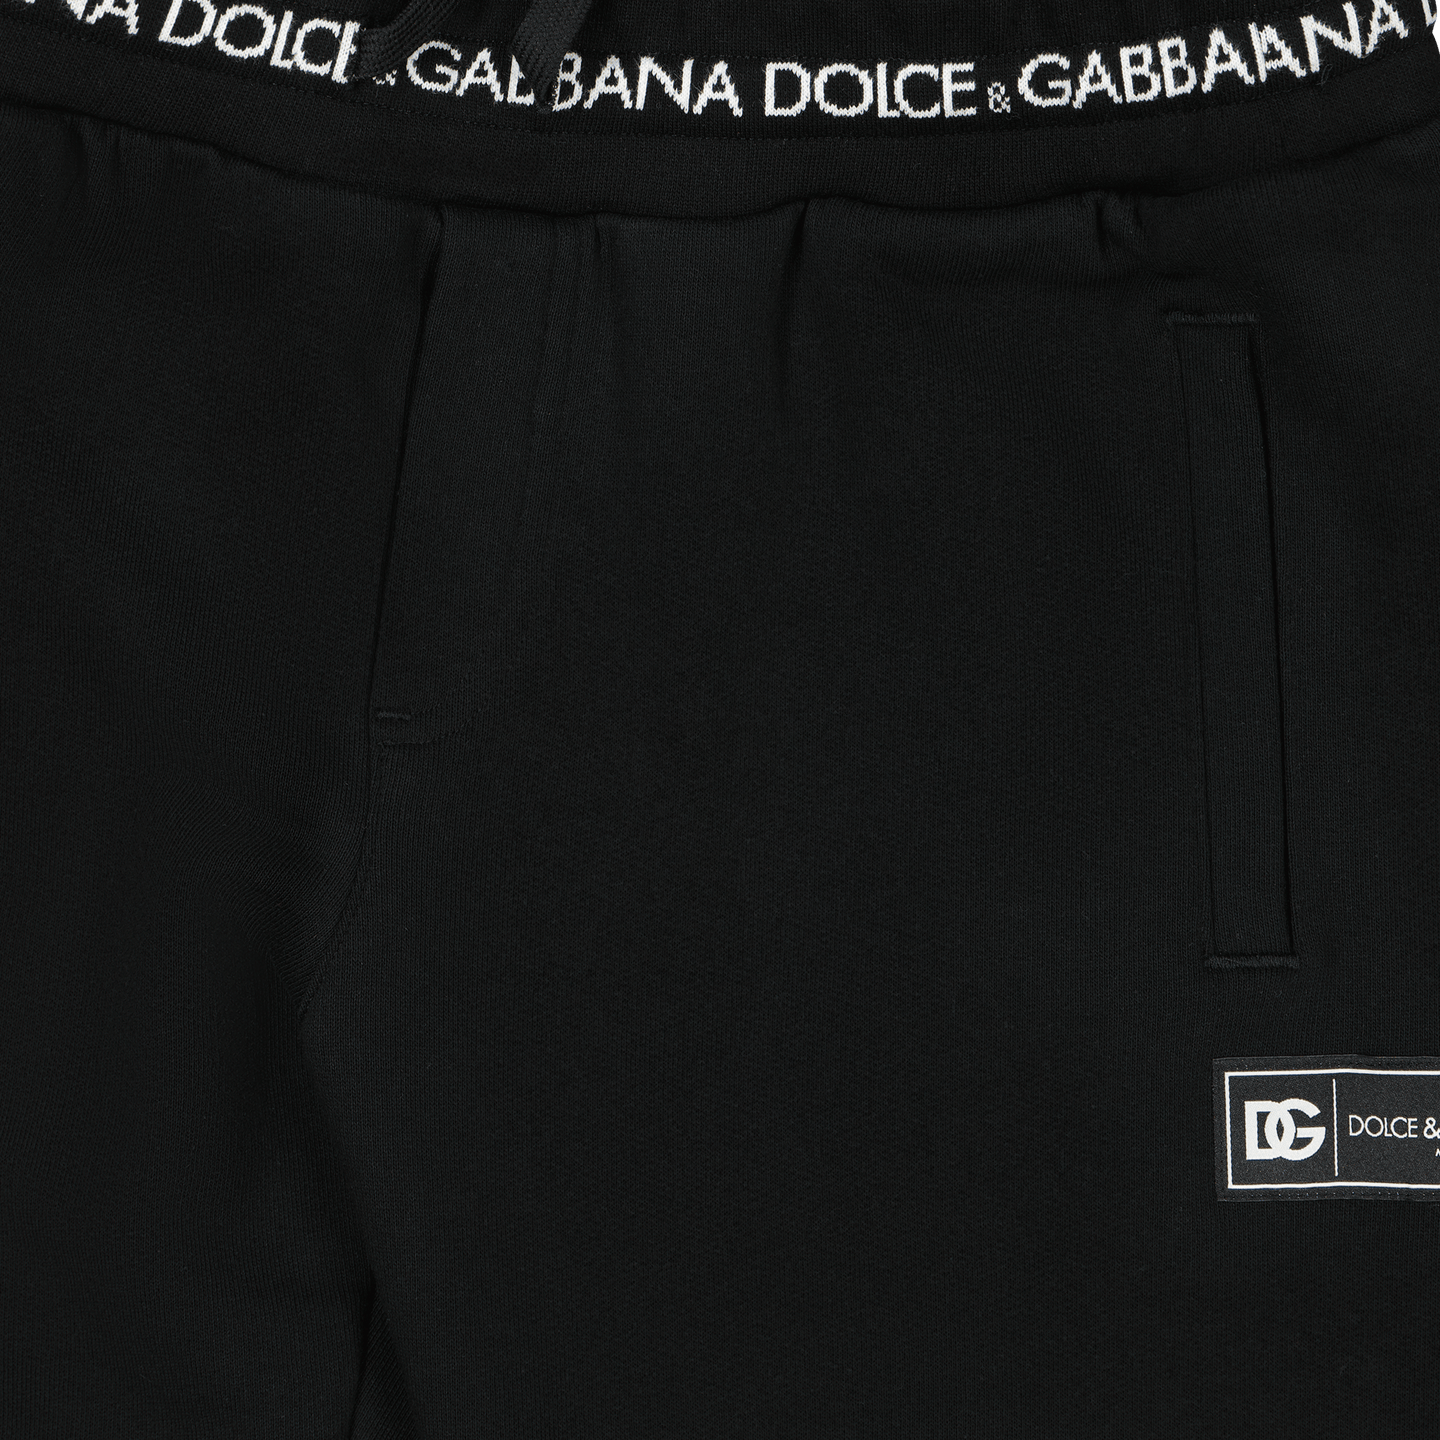 Dolce & Gabbana Kinder Broek Zwart 2Y